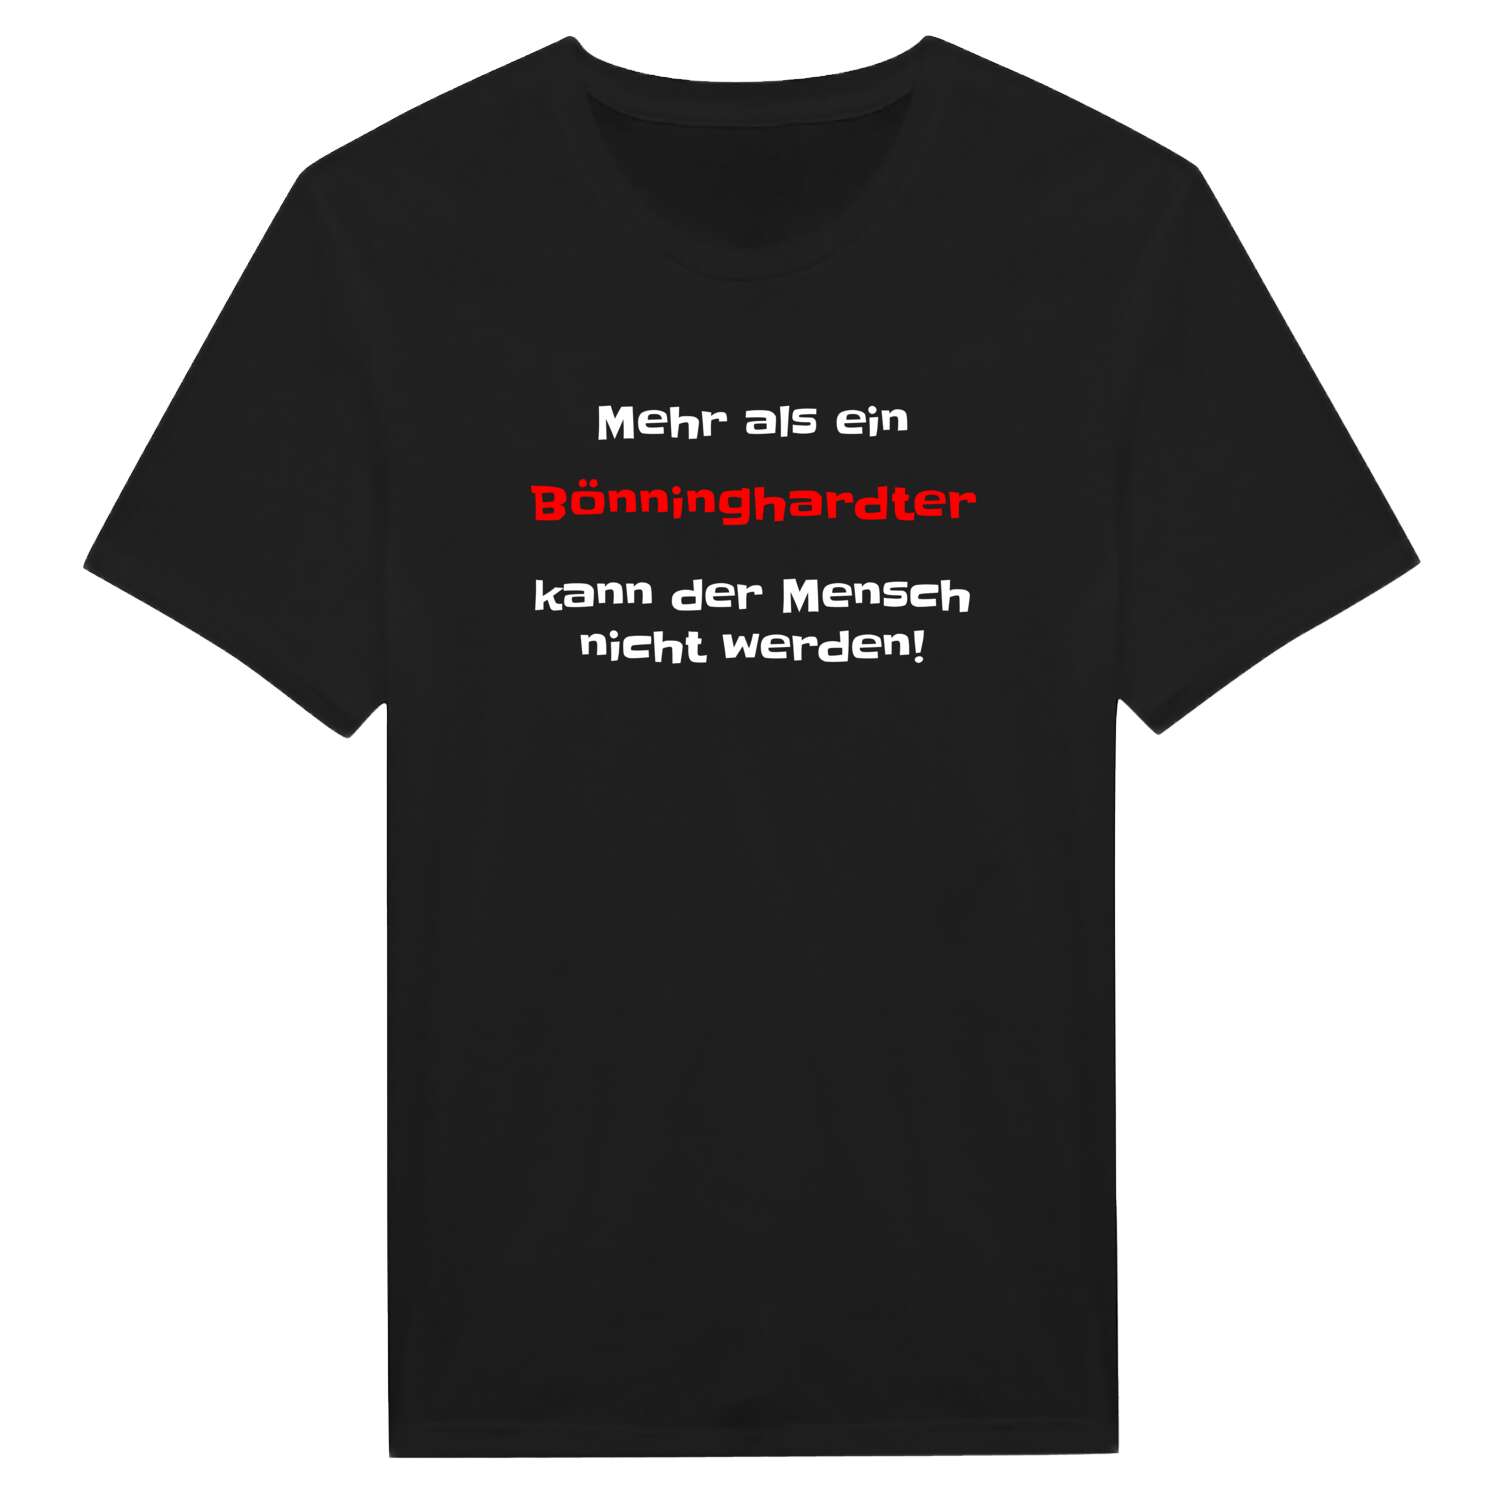 Bönninghardt T-Shirt »Mehr als ein«